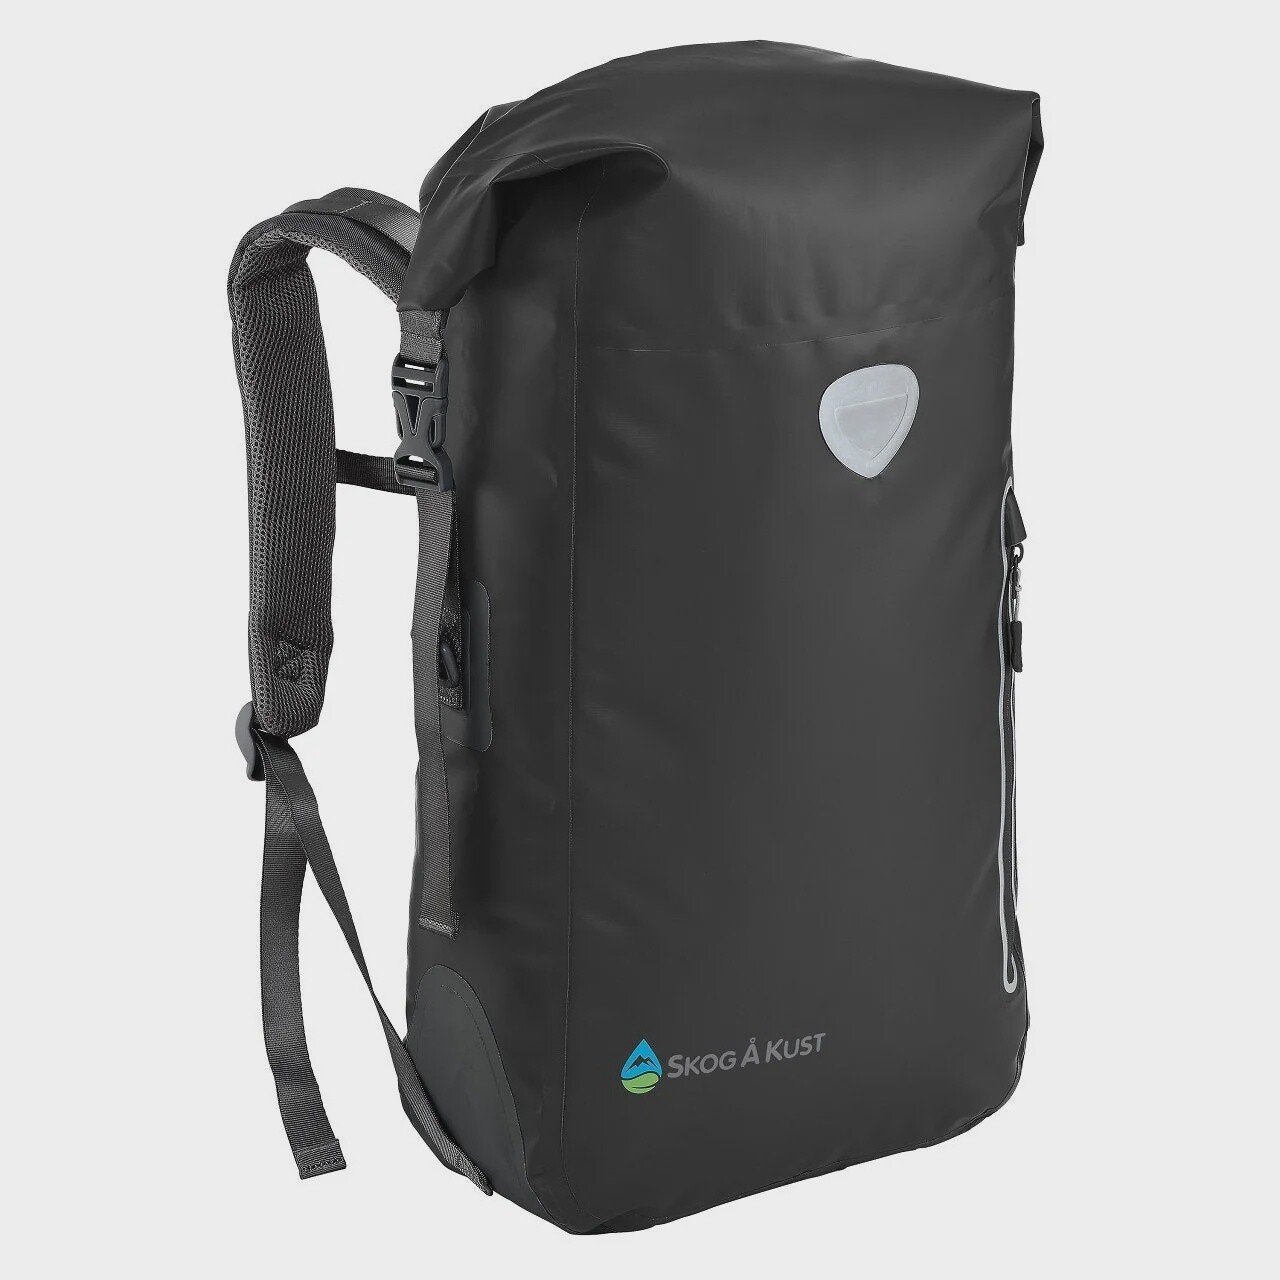 Skog A Kust BackSak 25L Waterproof Backpack, Colour: BLACK